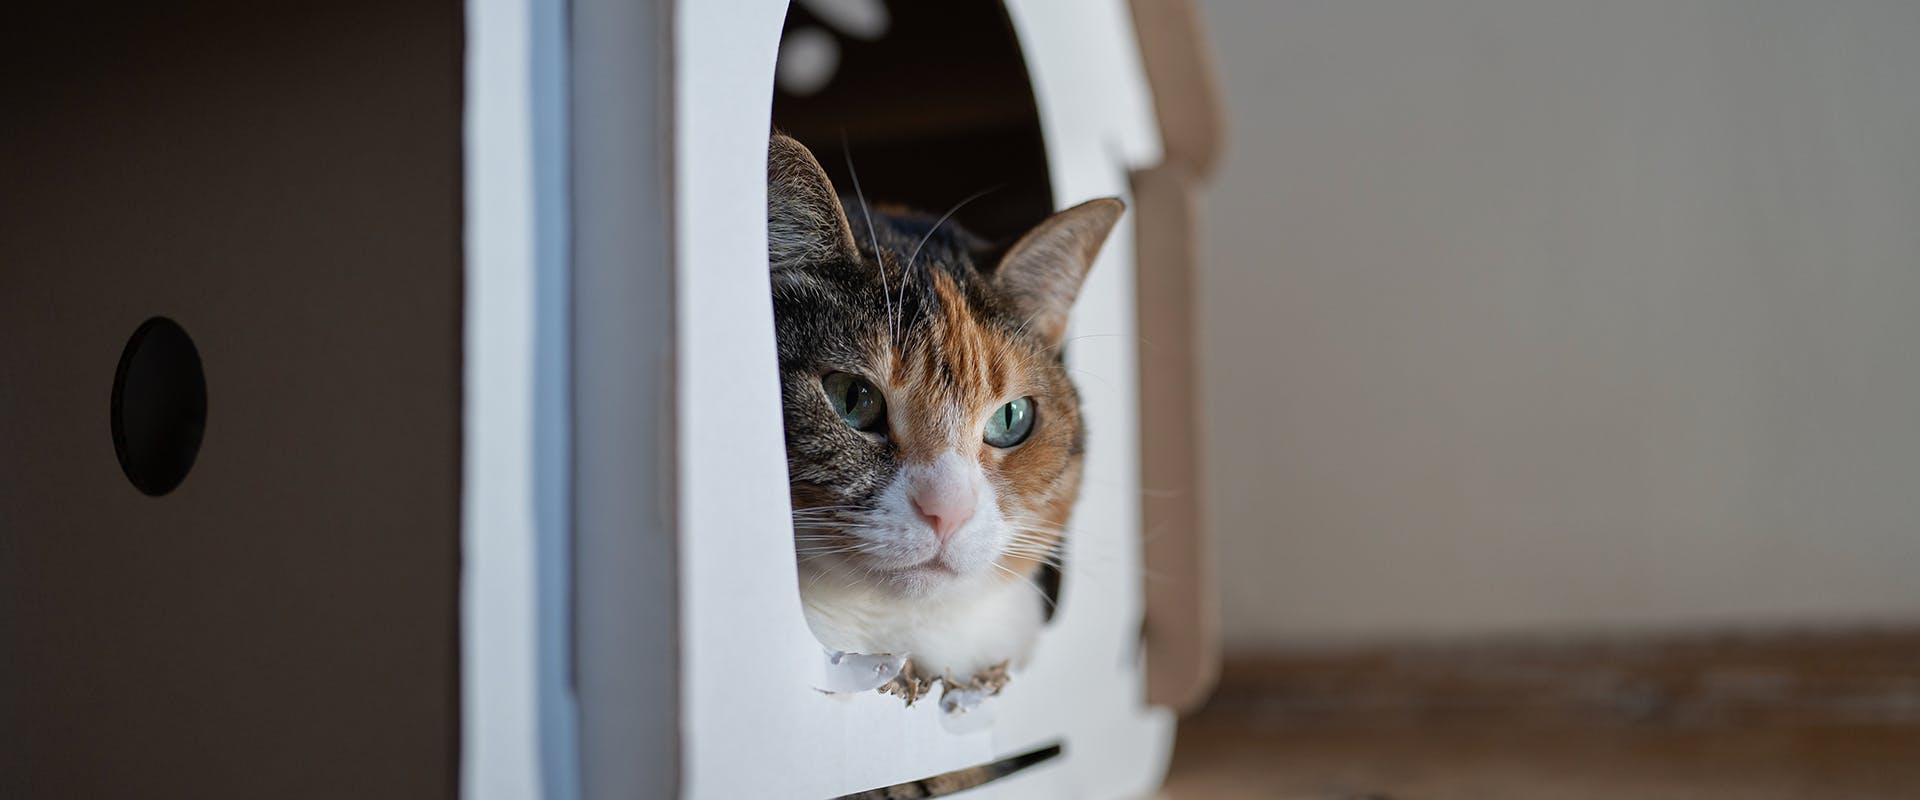 A cat sitting inside a cardboard cat scratcher house